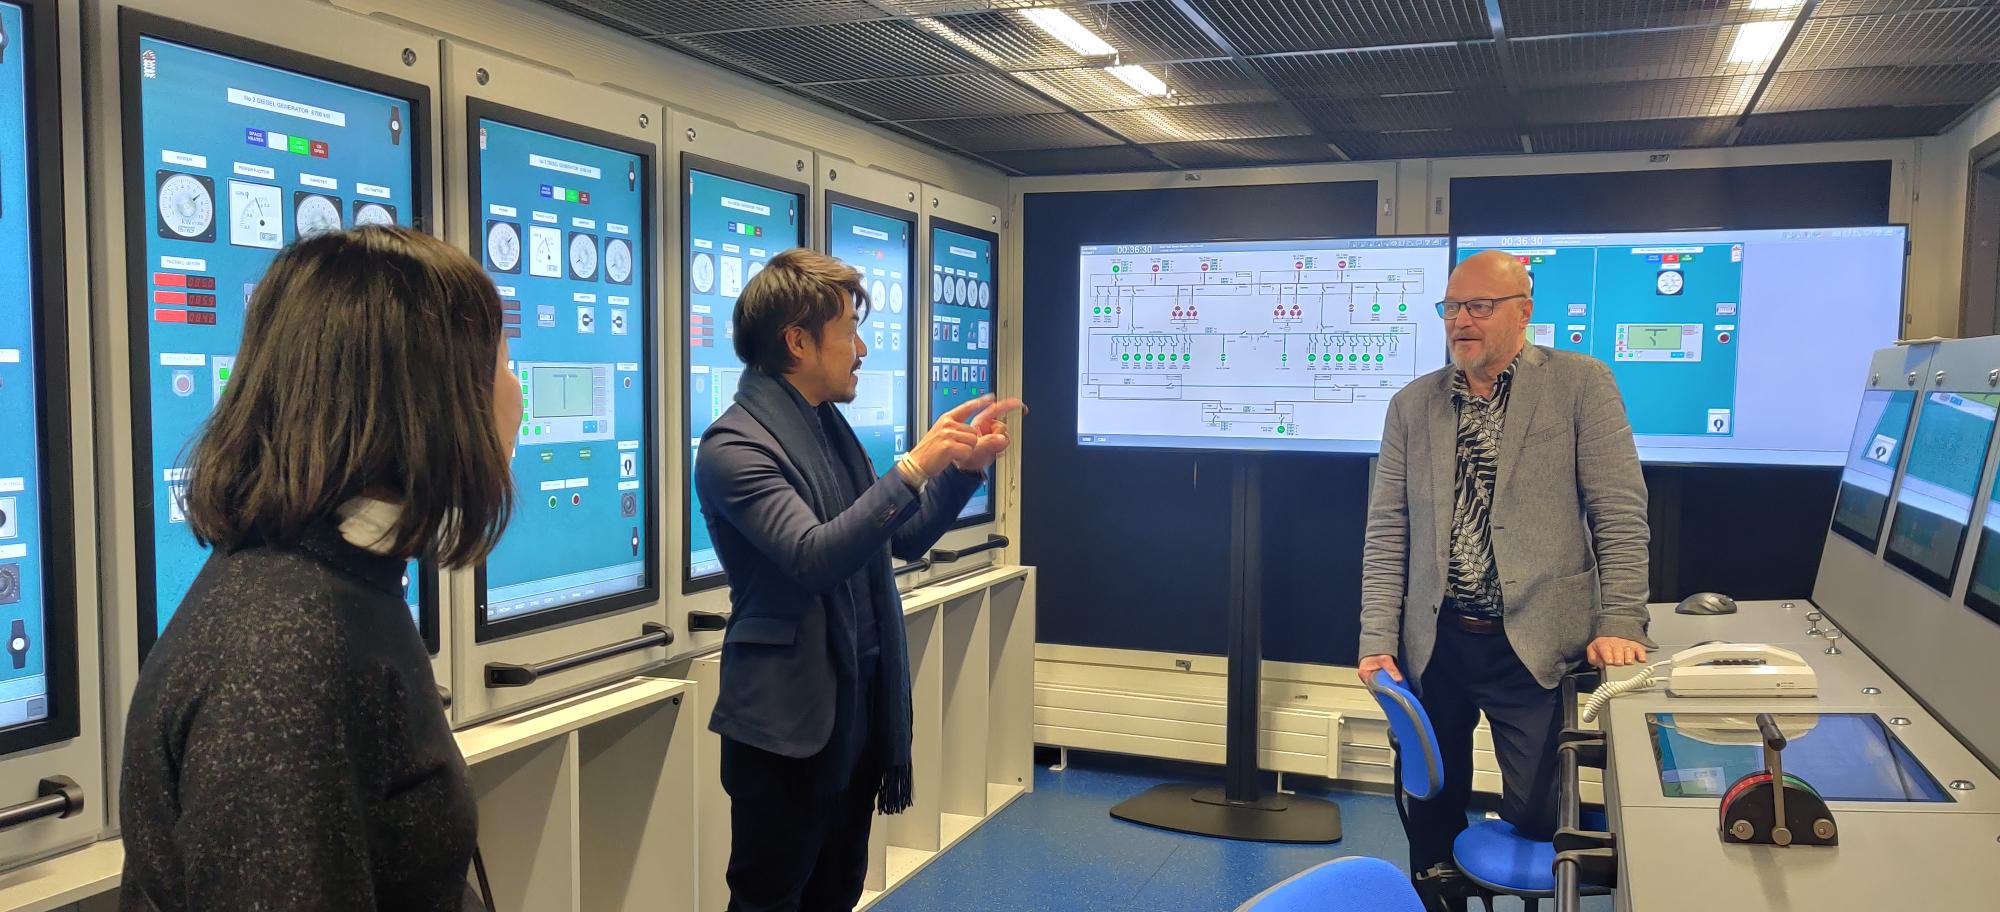 Yusuke Mori, Shigemi Matsuzaki ja Heikki Koivisto keskustelevat simulaatiotilojen kontrollihuoneessa. Taustalla isoja näyttöjä, joissa kaaviokuvia.